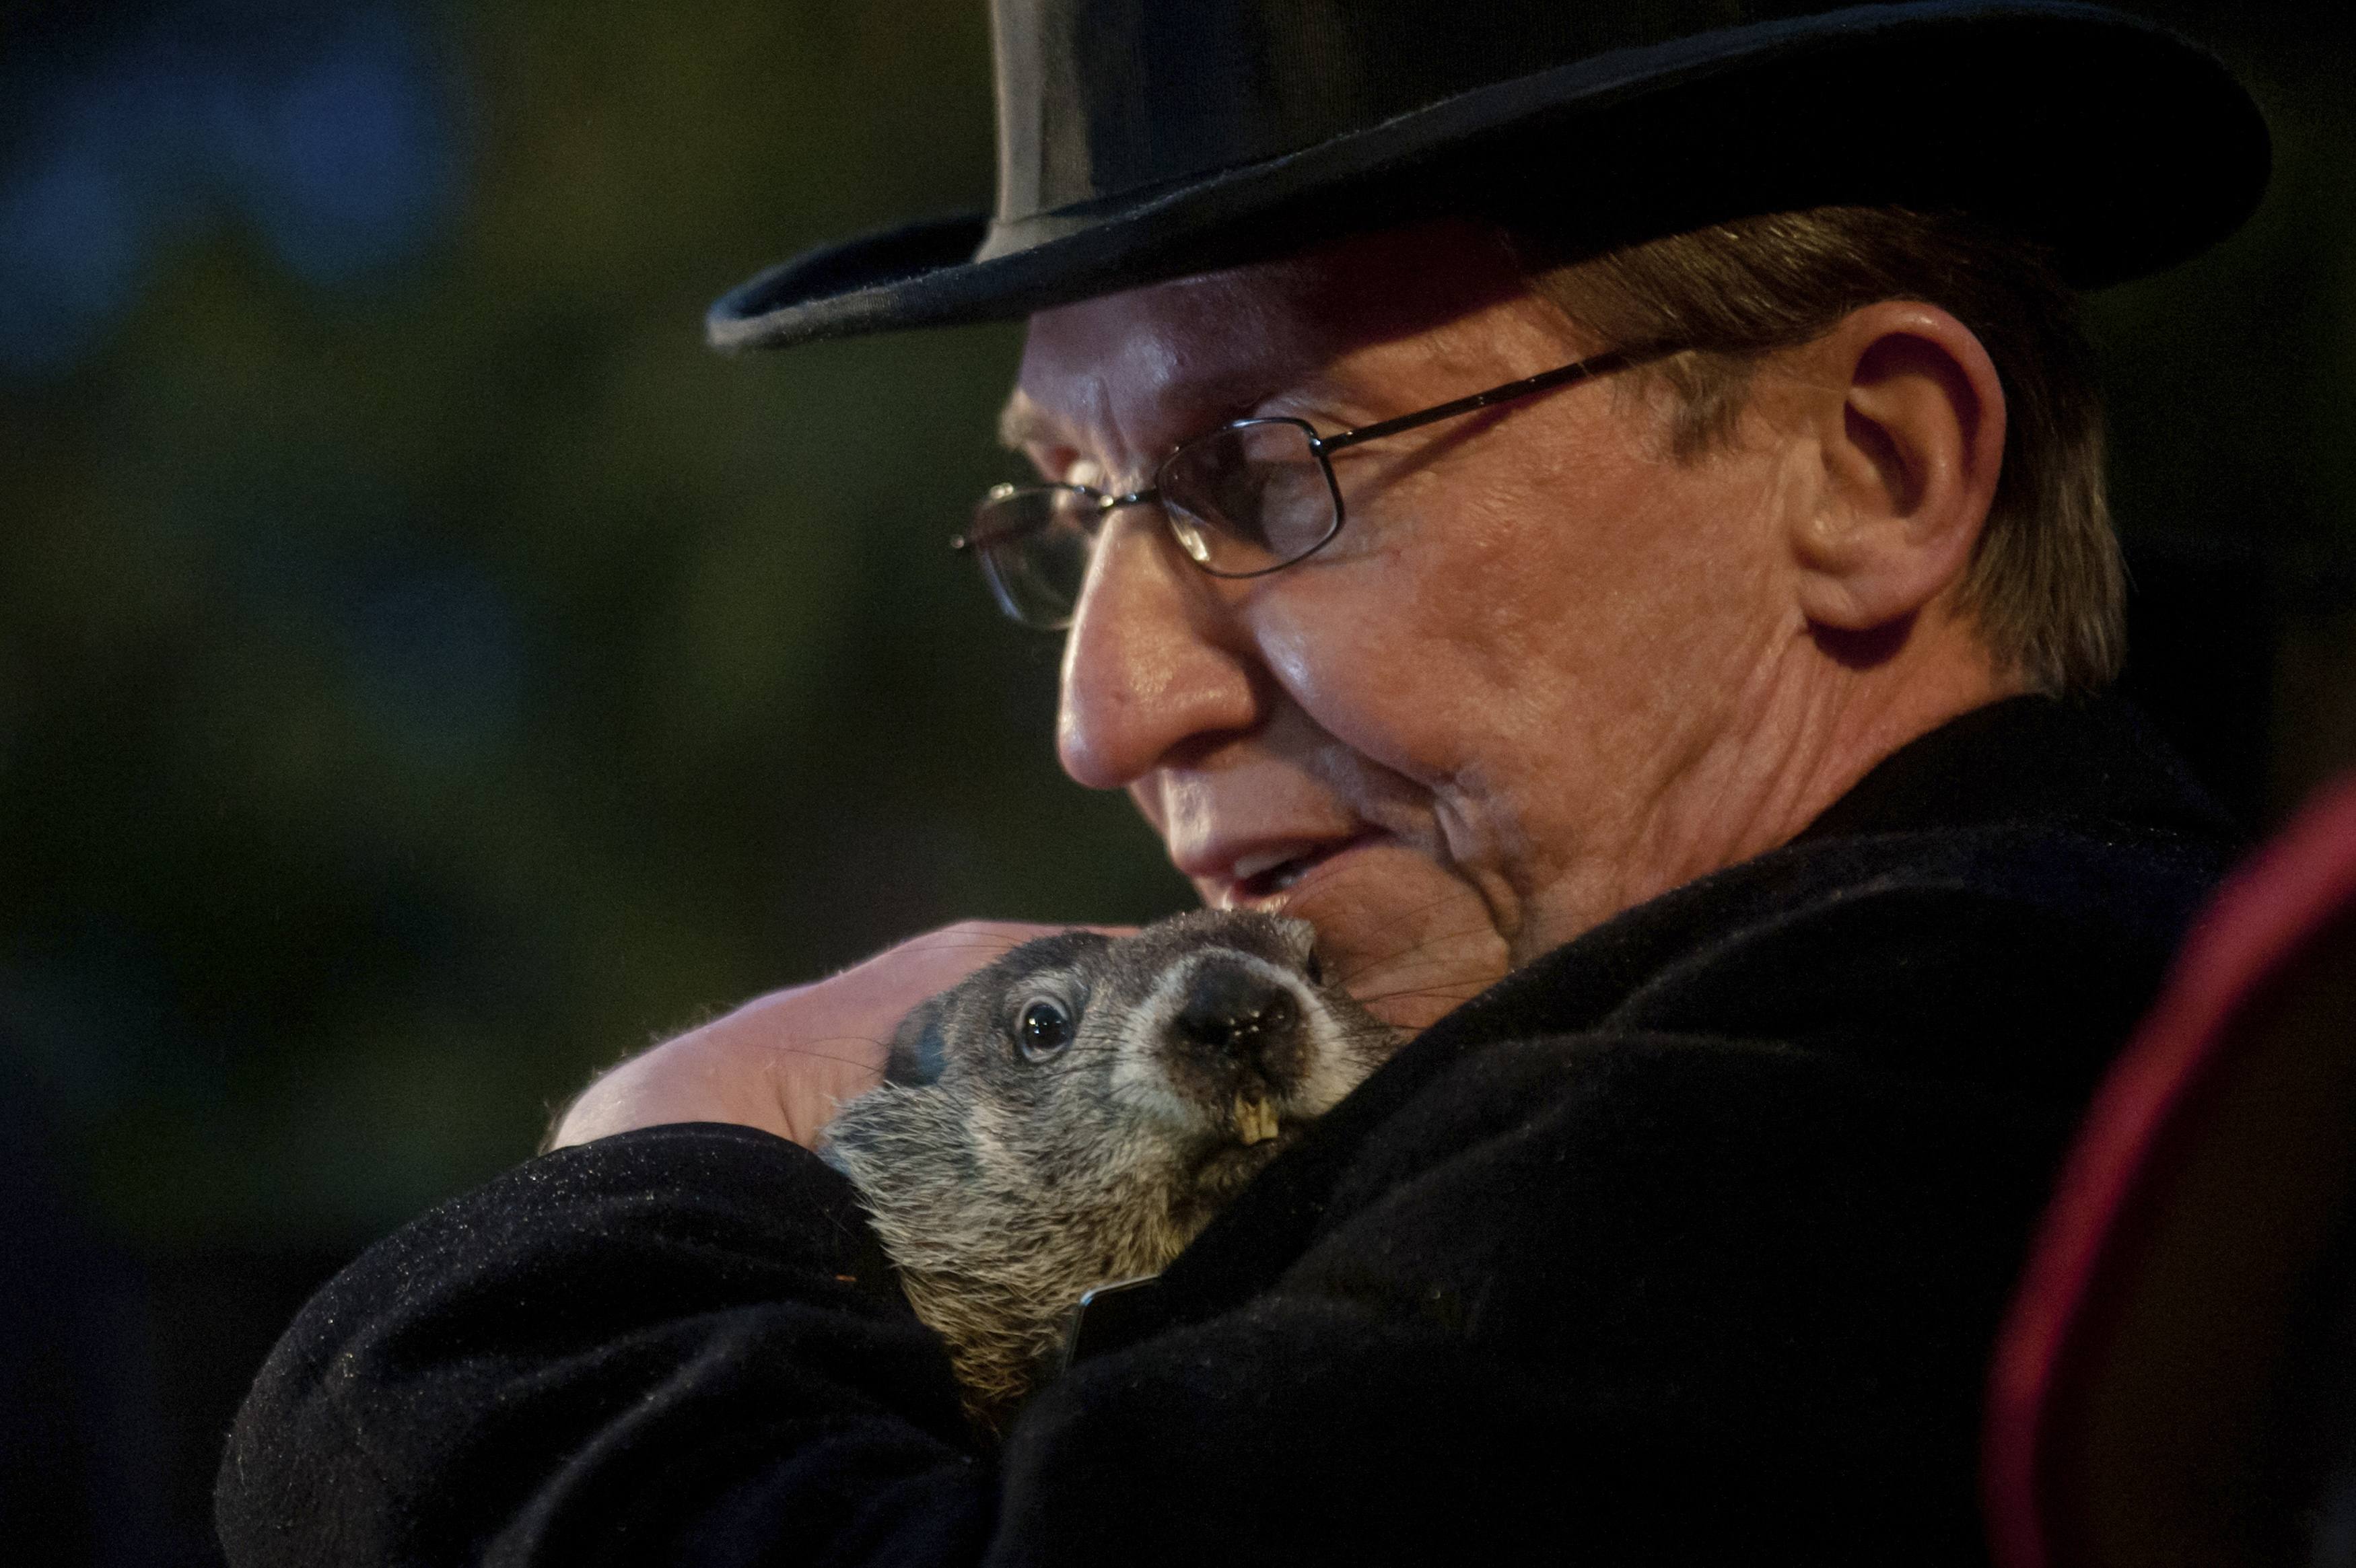 La marmota Phil pronostica seis semanas más de invierno (Fotos)